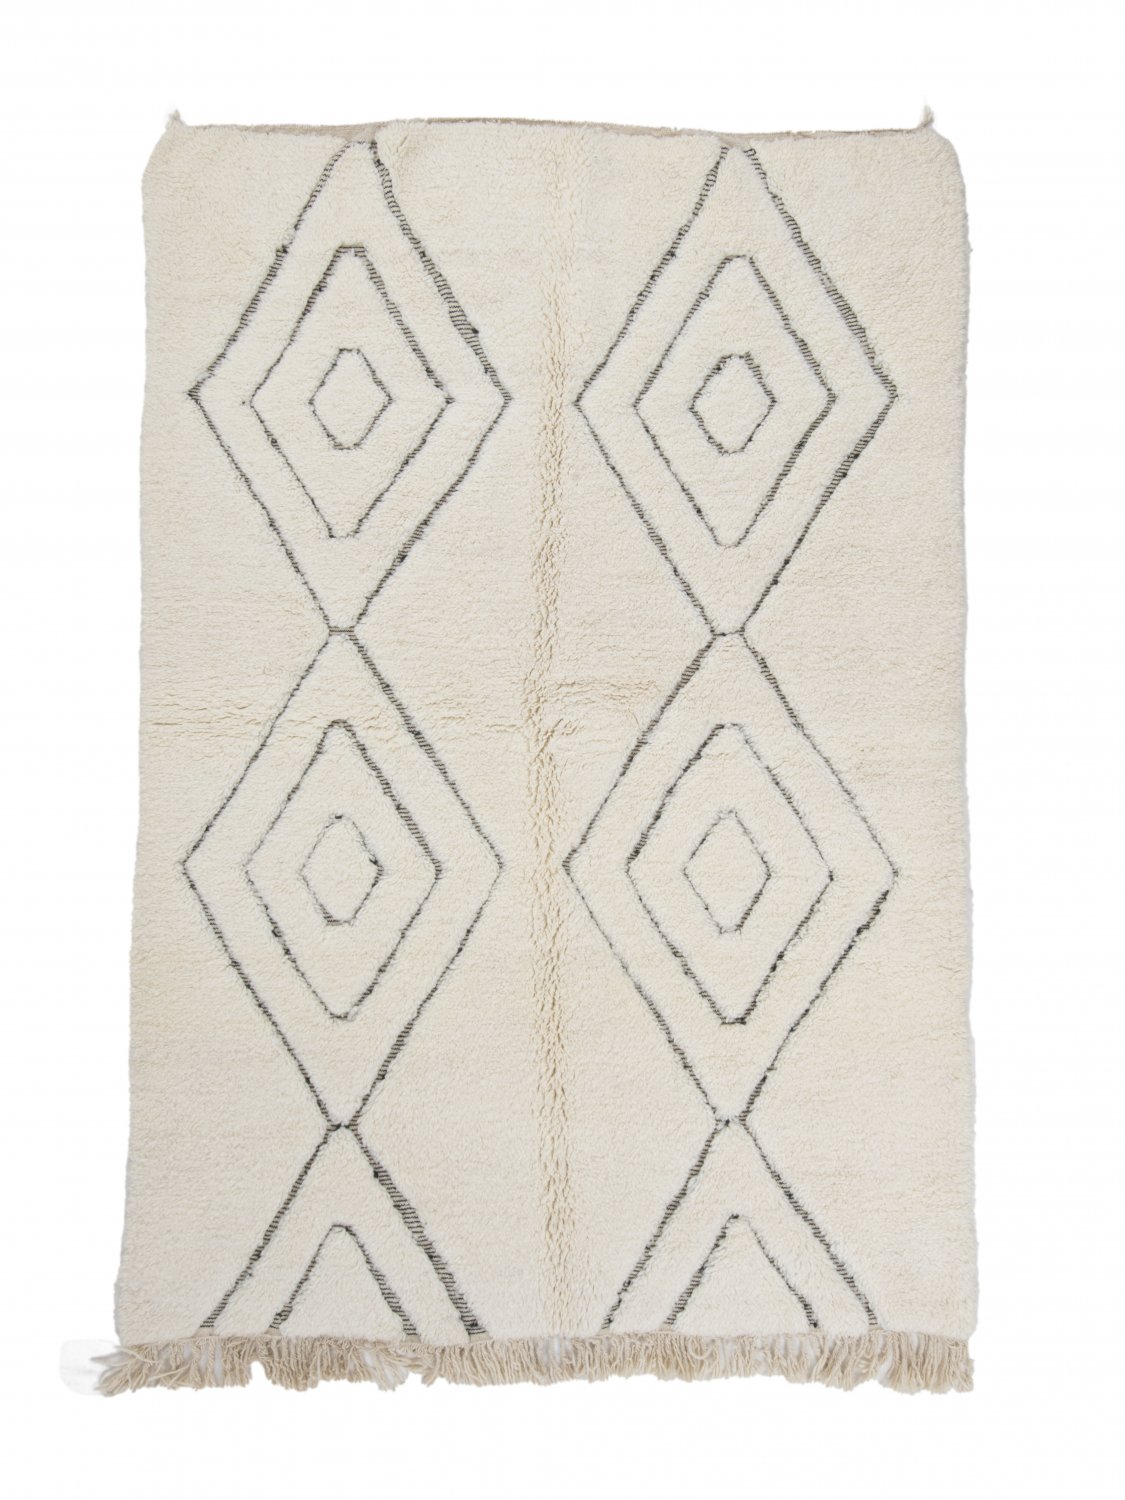 Marokkolainen Kilim matto Beni Ouarain 240 x 170 cm